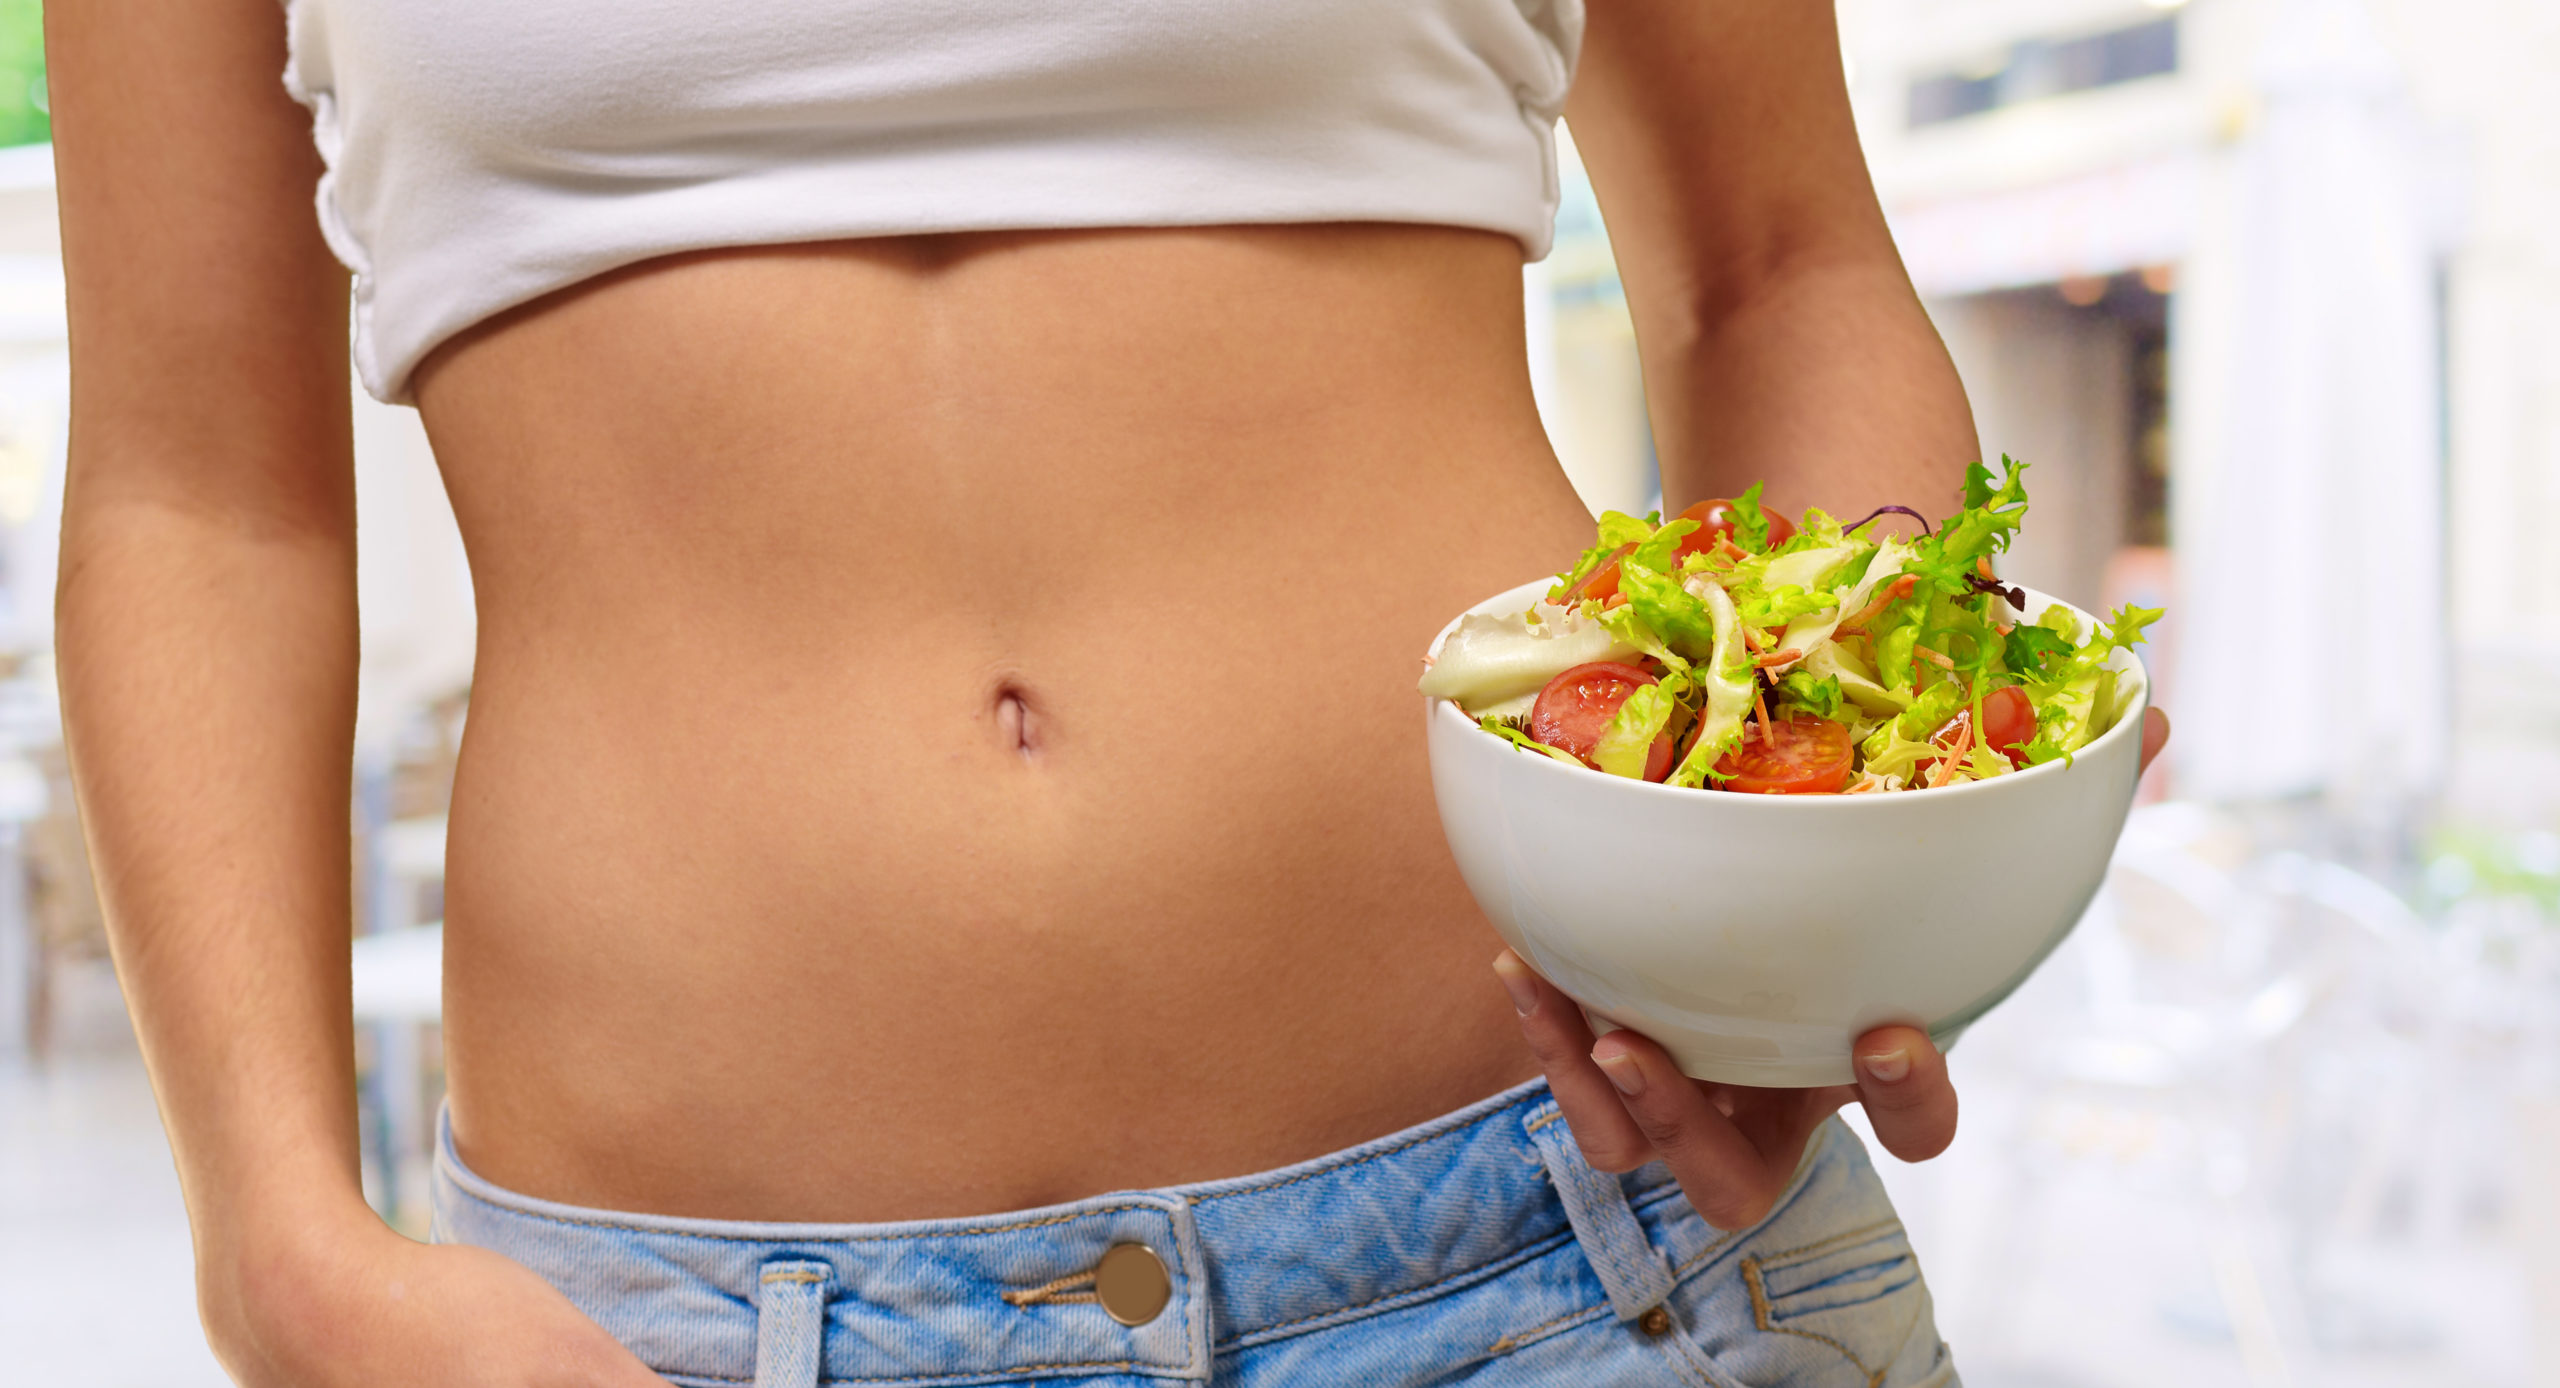 Дикша на похудение. Правильное питание. Питание и стройность. Еда в животе. Здоровый живот женщины.